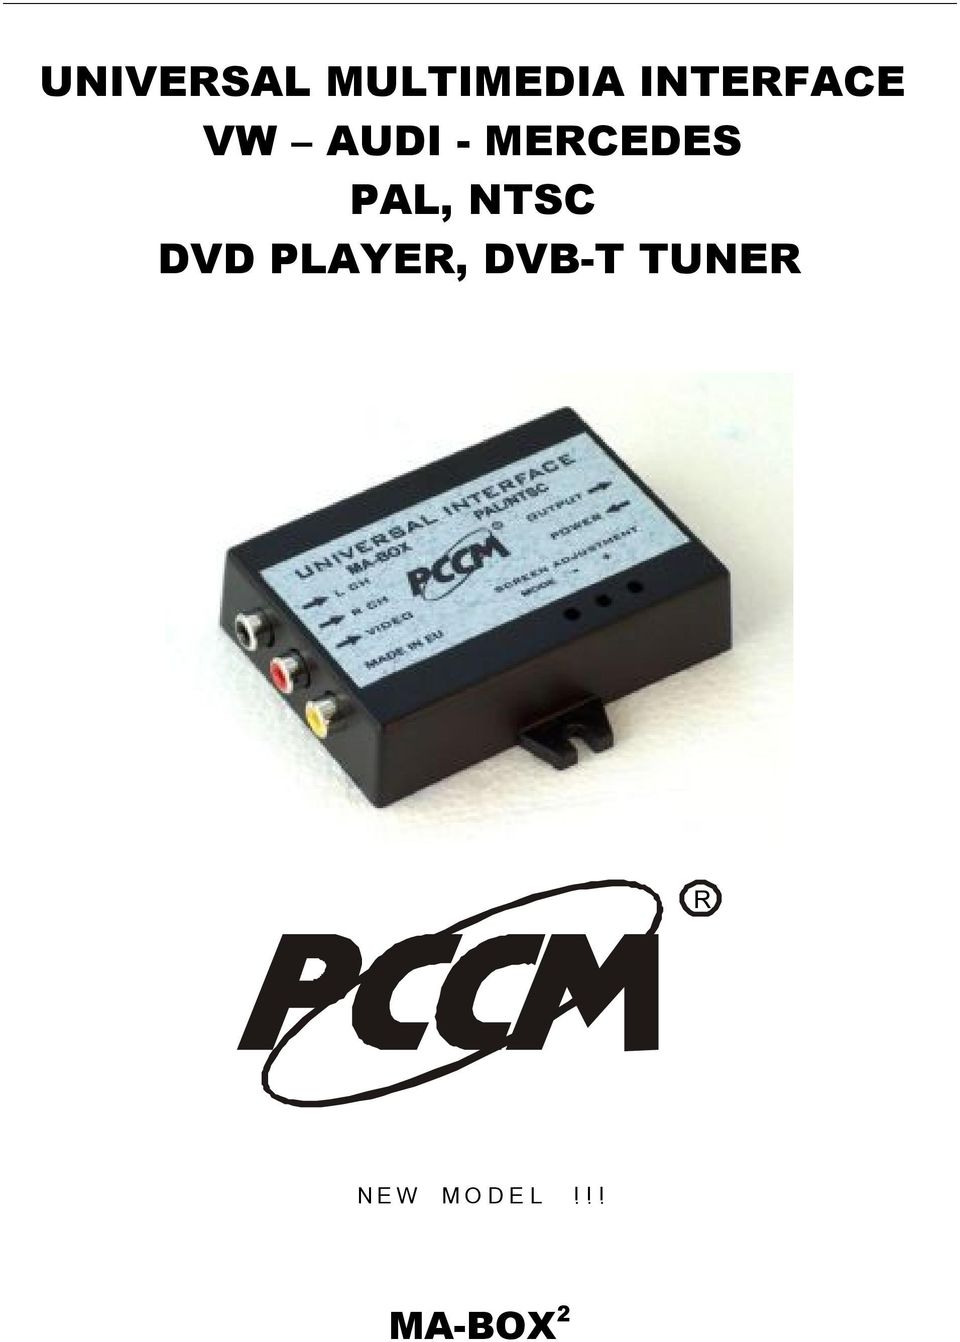 PAL, NTSC DVD AYER, DVB-T